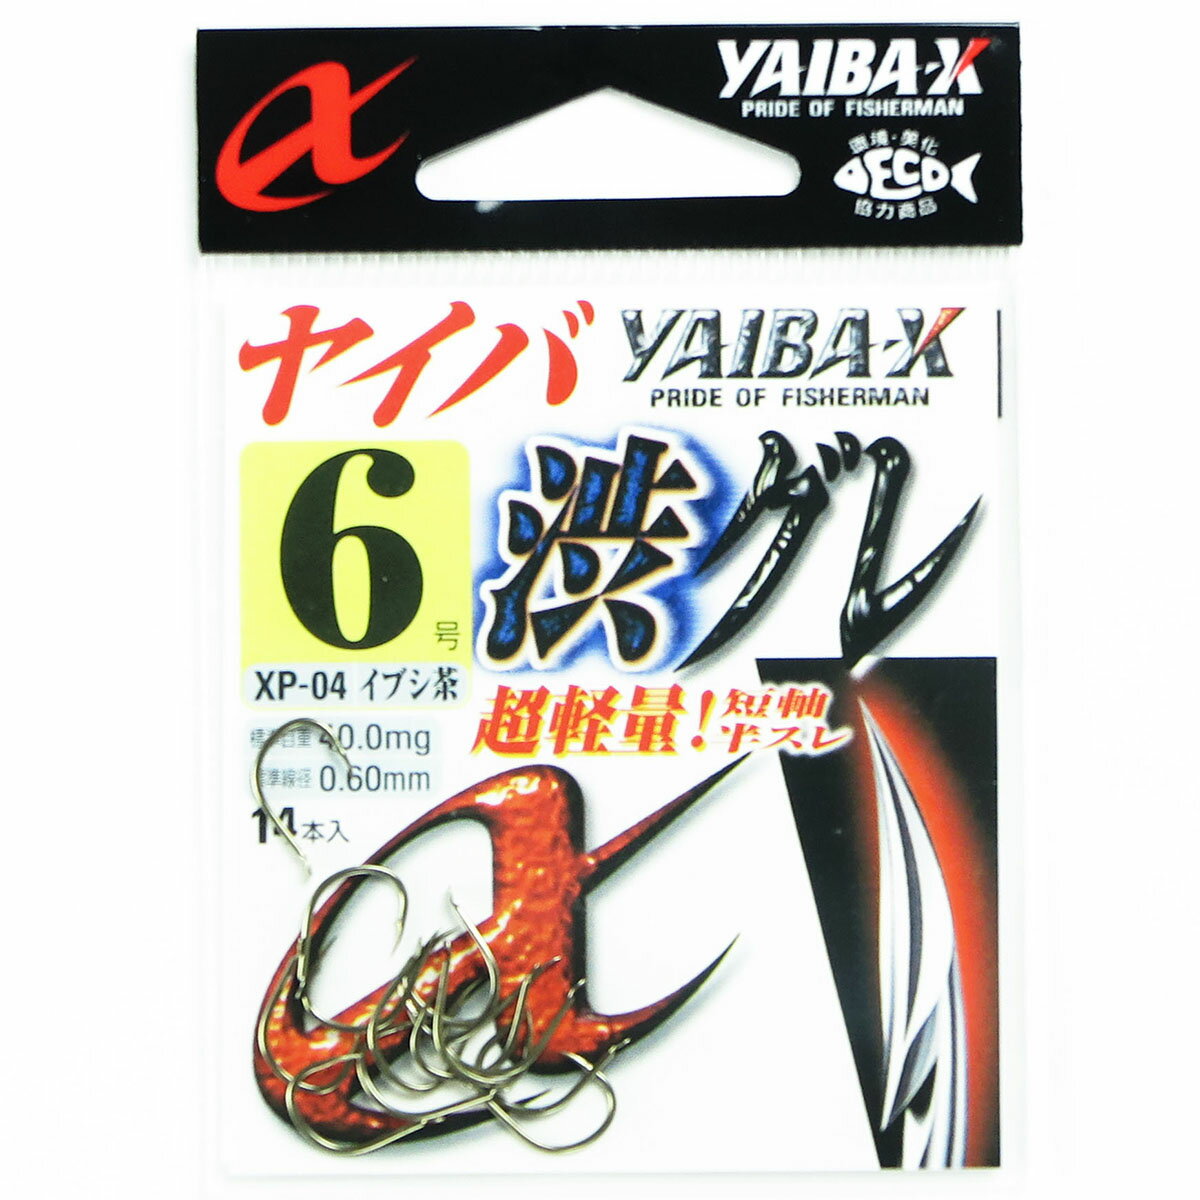 「 ささめ針 SASAME XP-04 ヤイバ渋グレ 6号 茶 」  釣り 釣り具 釣具 釣り用品